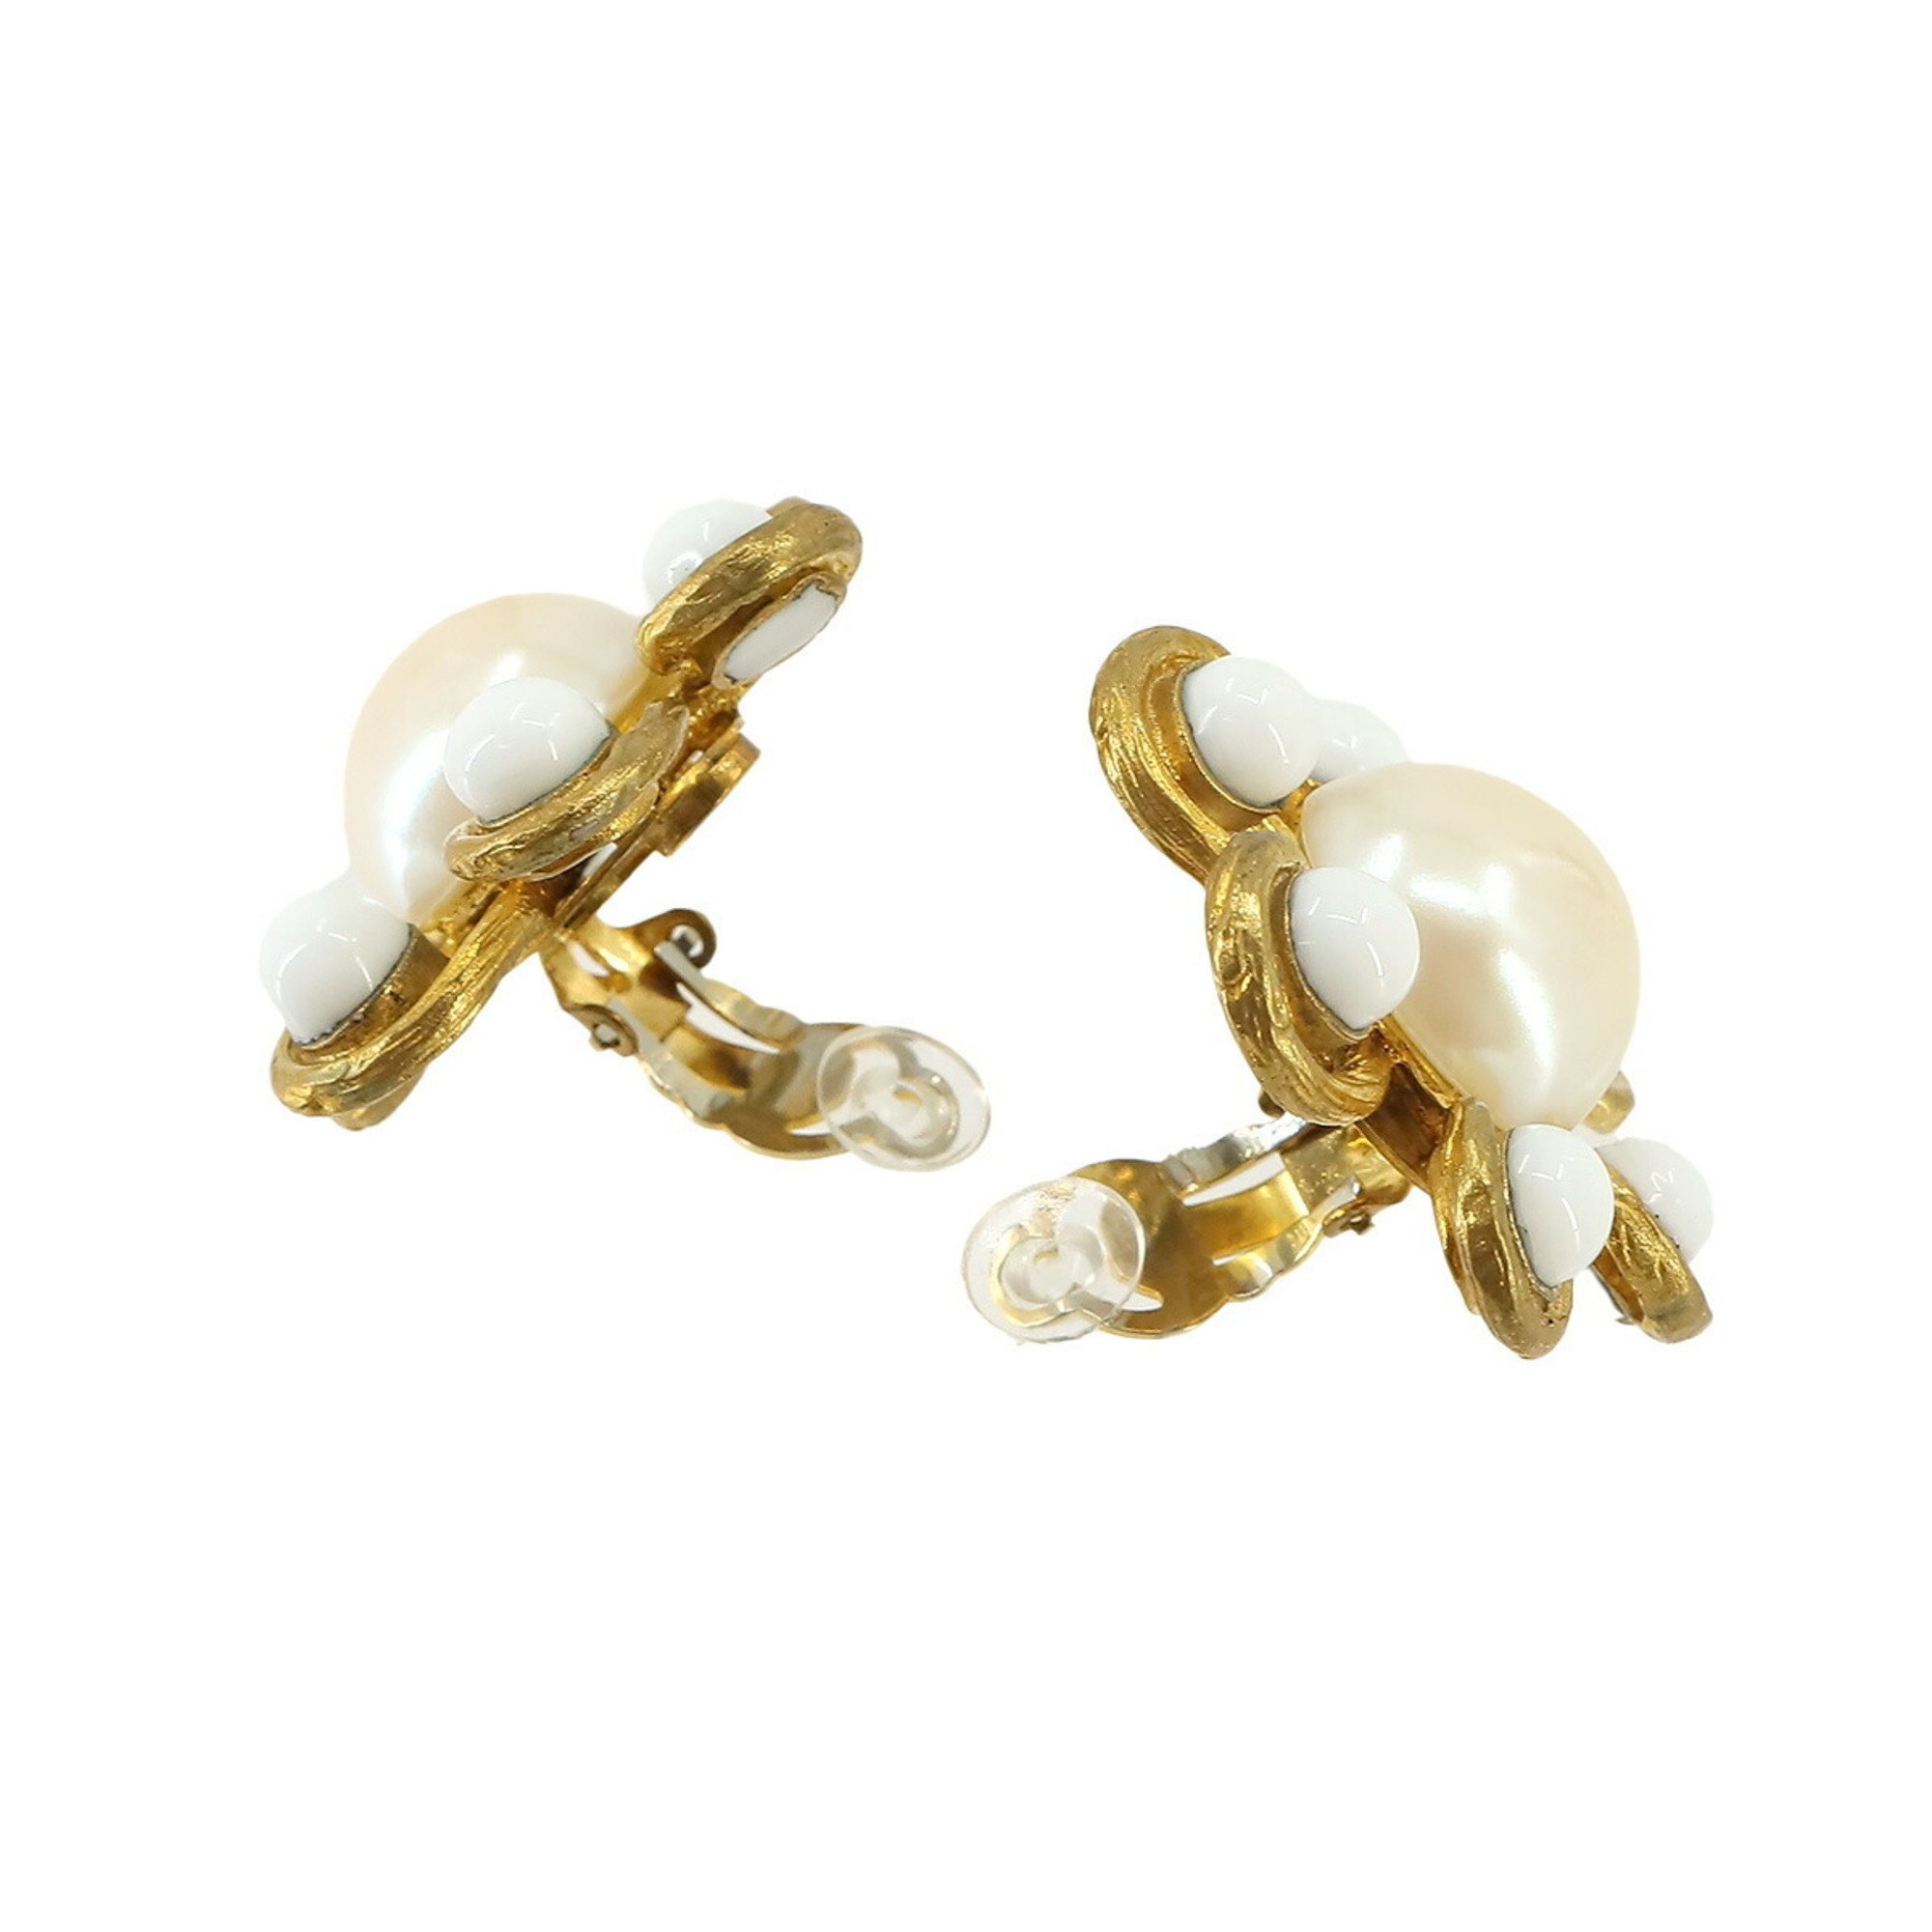 CHANEL Flower Faux Pearl Earrings Gold White 93P